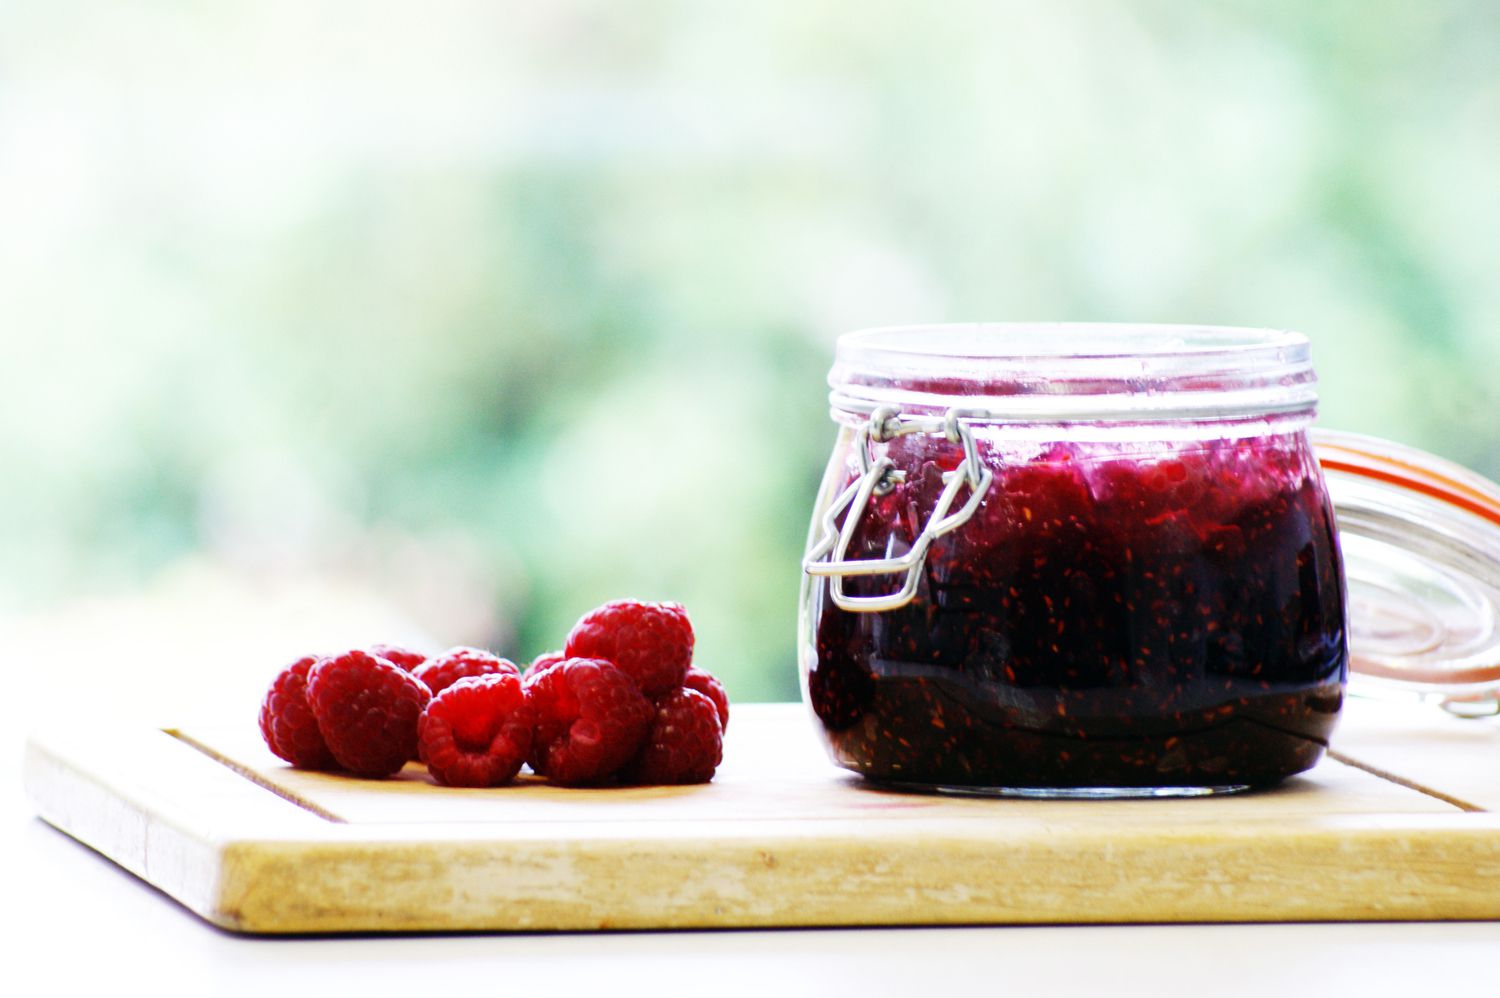 Home-made raspberry jam